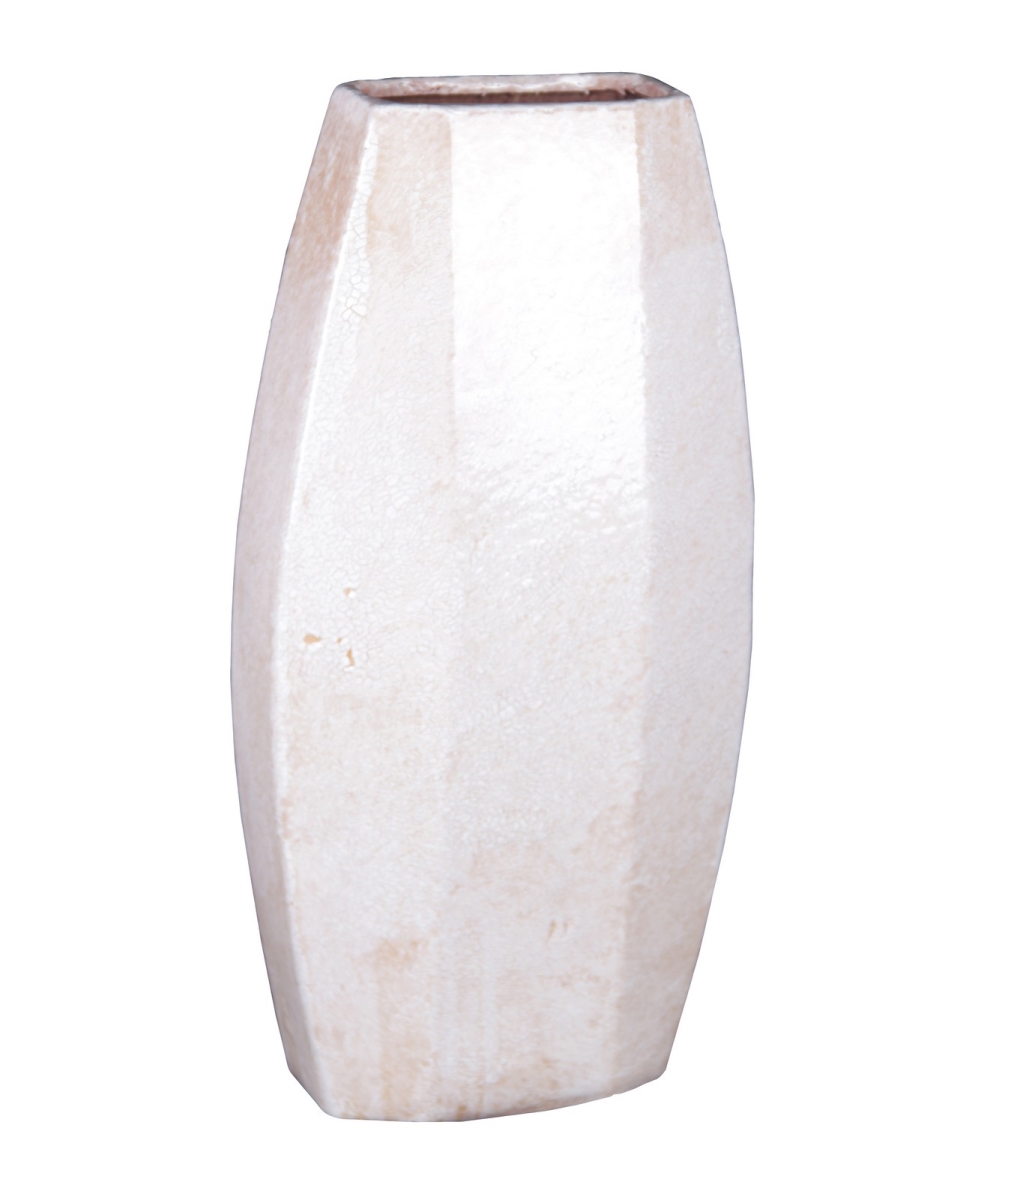 66634 Large Ceramic Vase